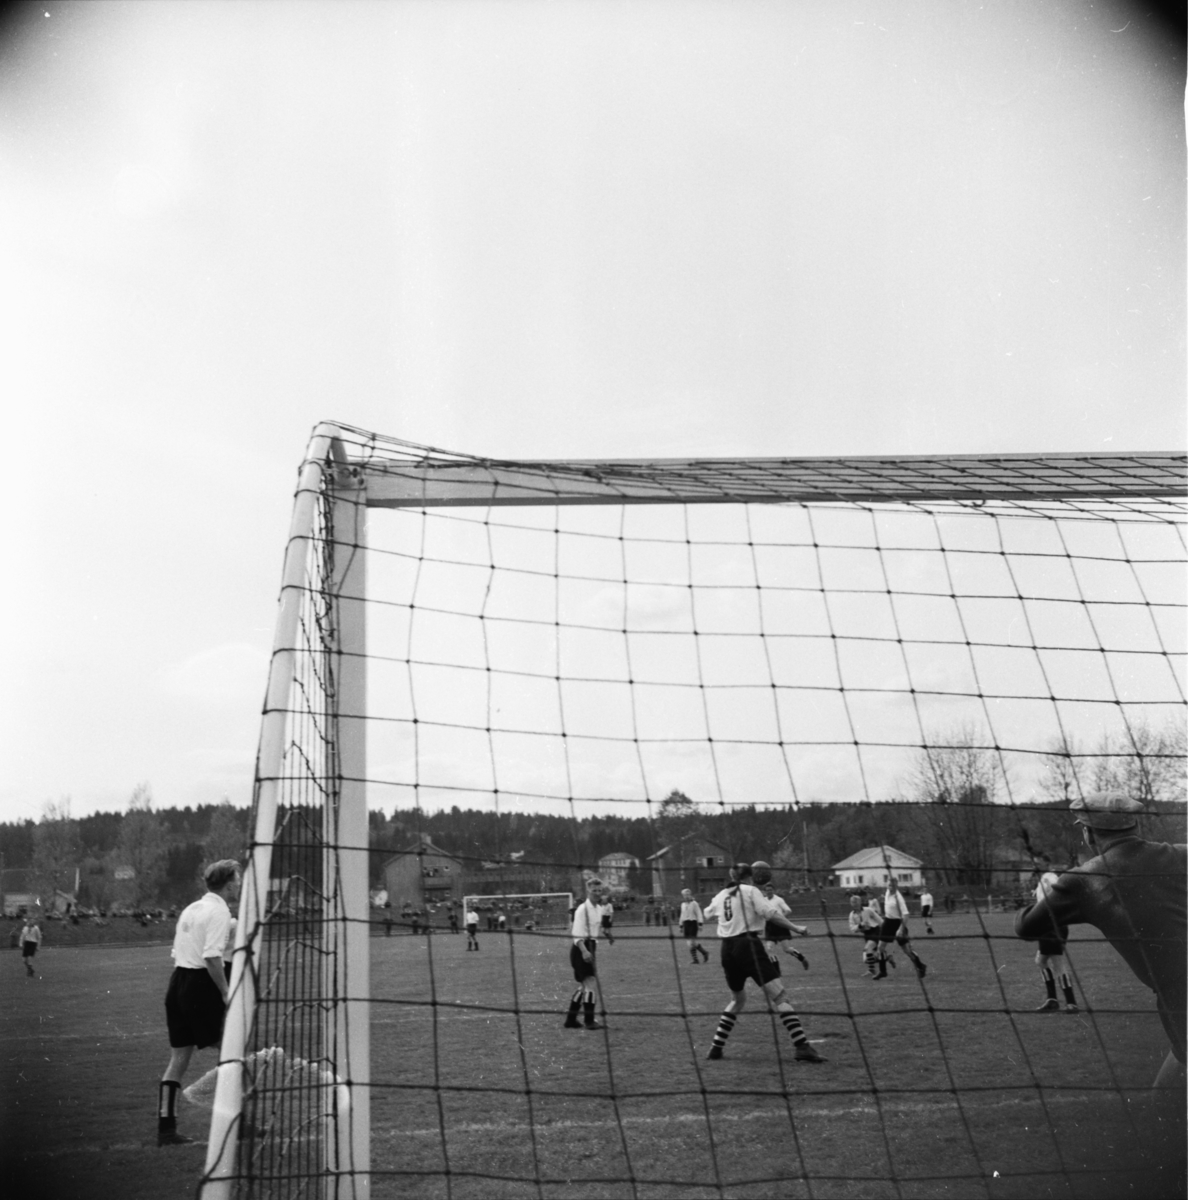 Vardens arkiv. "Fotballkamp. Odd - Lillestrøm  3-3"  16.05.1954